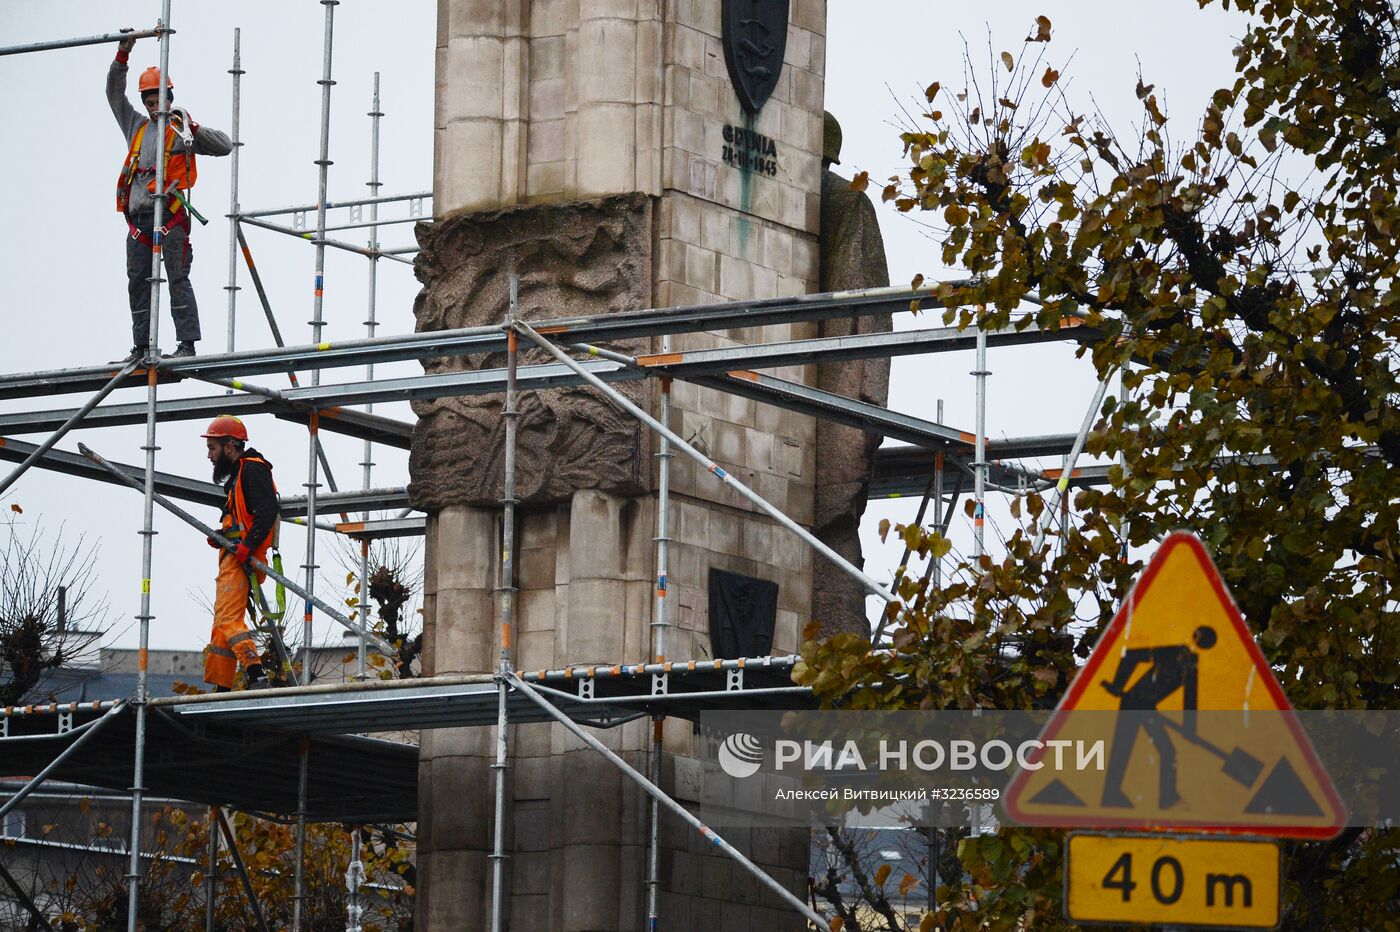 Памятник благодарности Красной армии начали демонтировать в польском Щецине